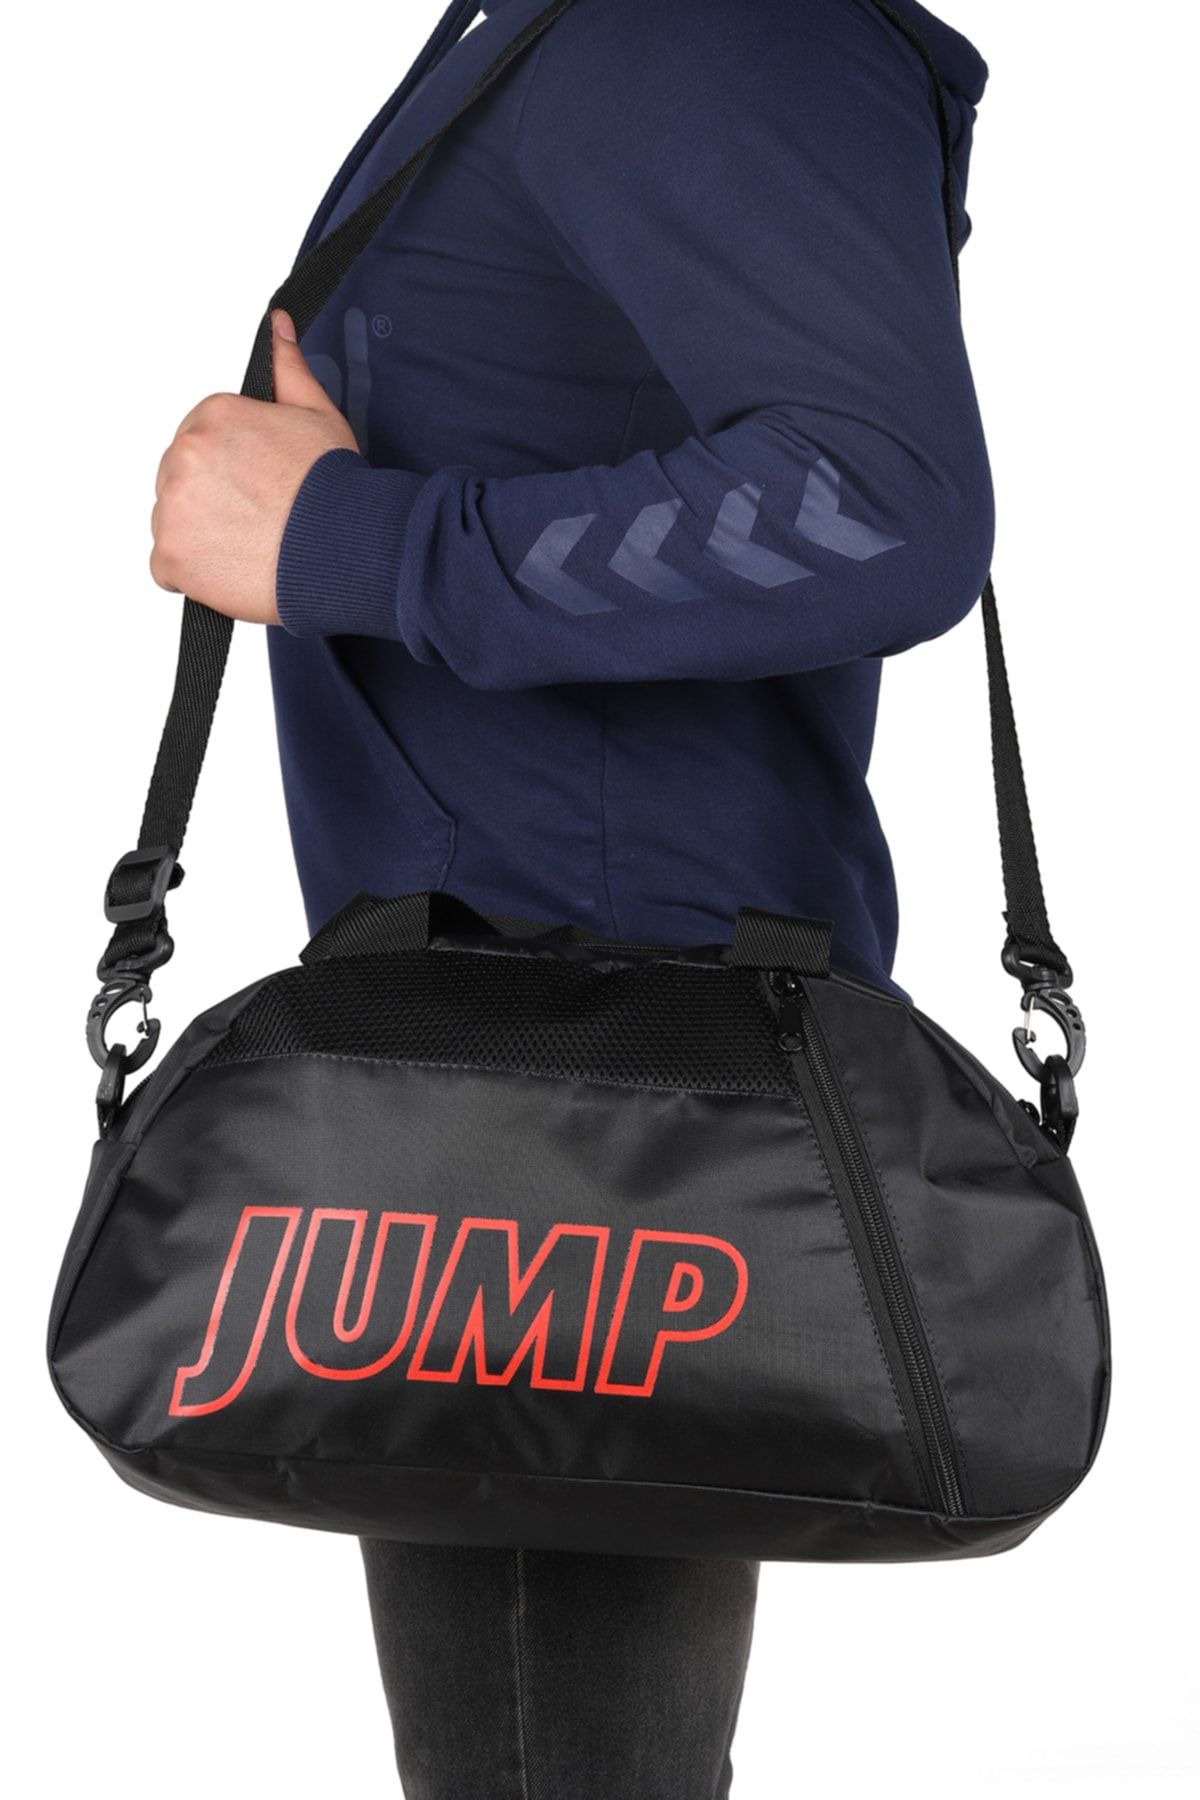 Jump Unisex Siyah Seyahat Çanta